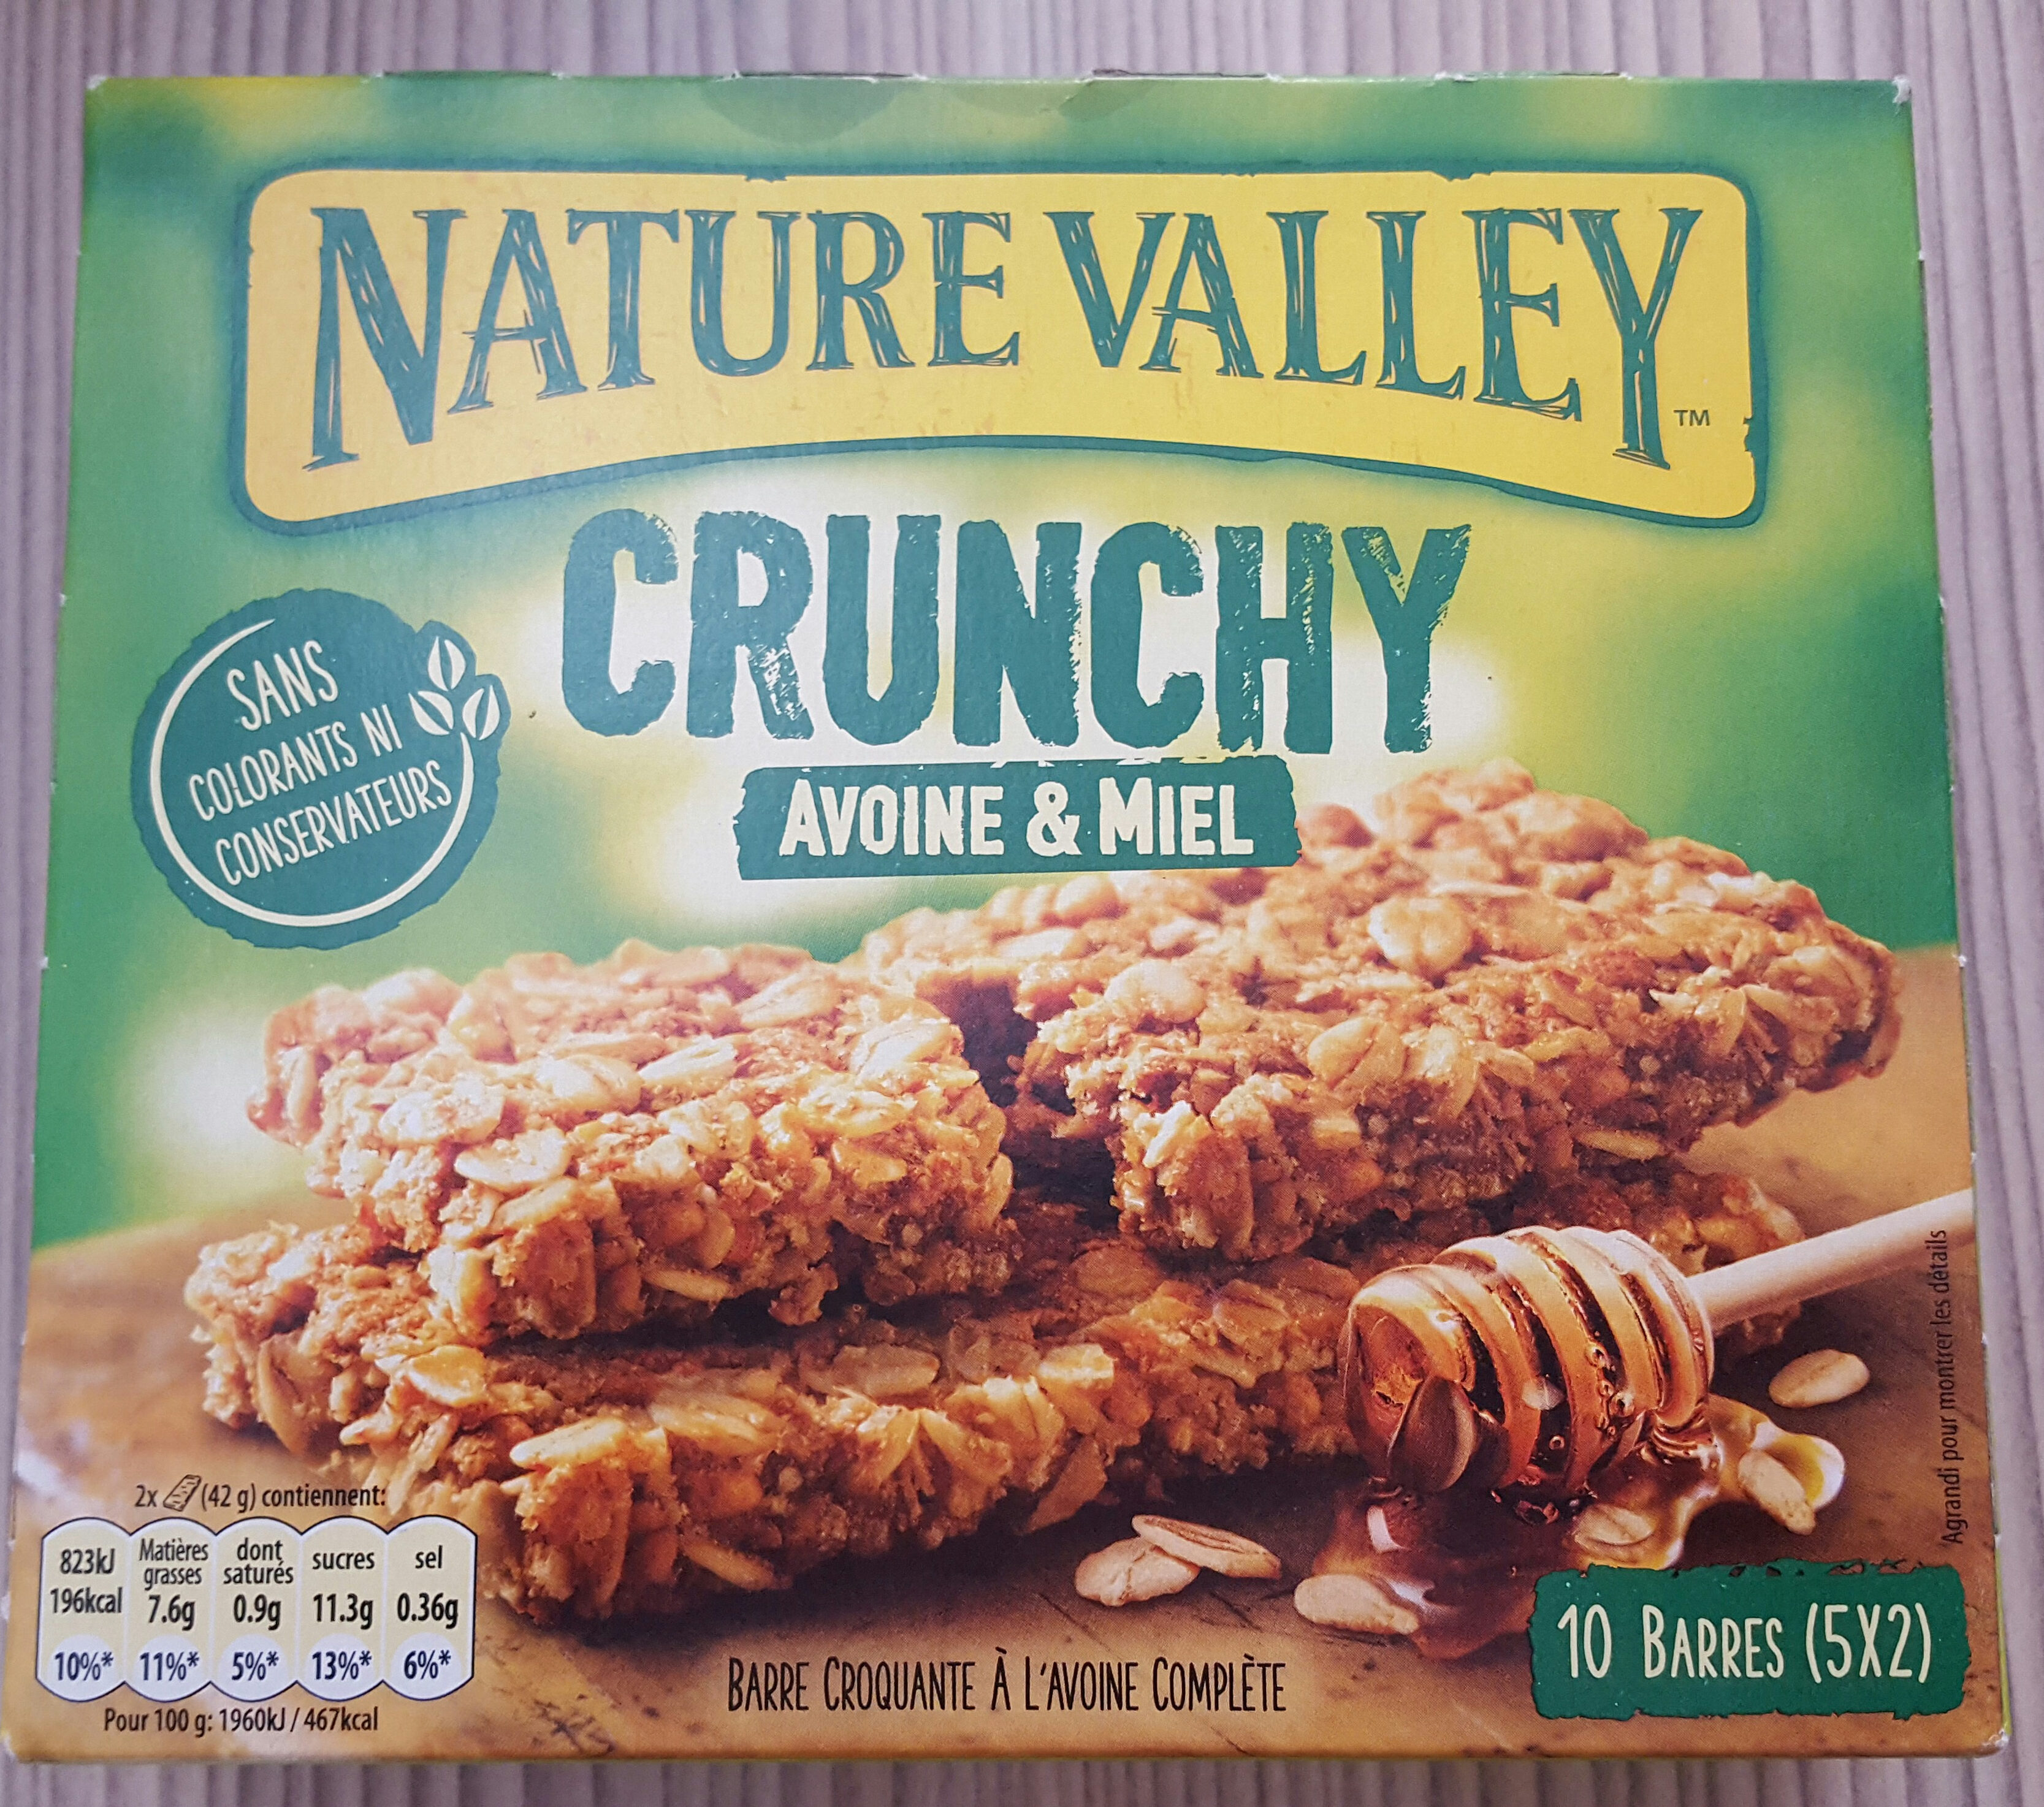 Crunchy avoine et miel - Product - fr